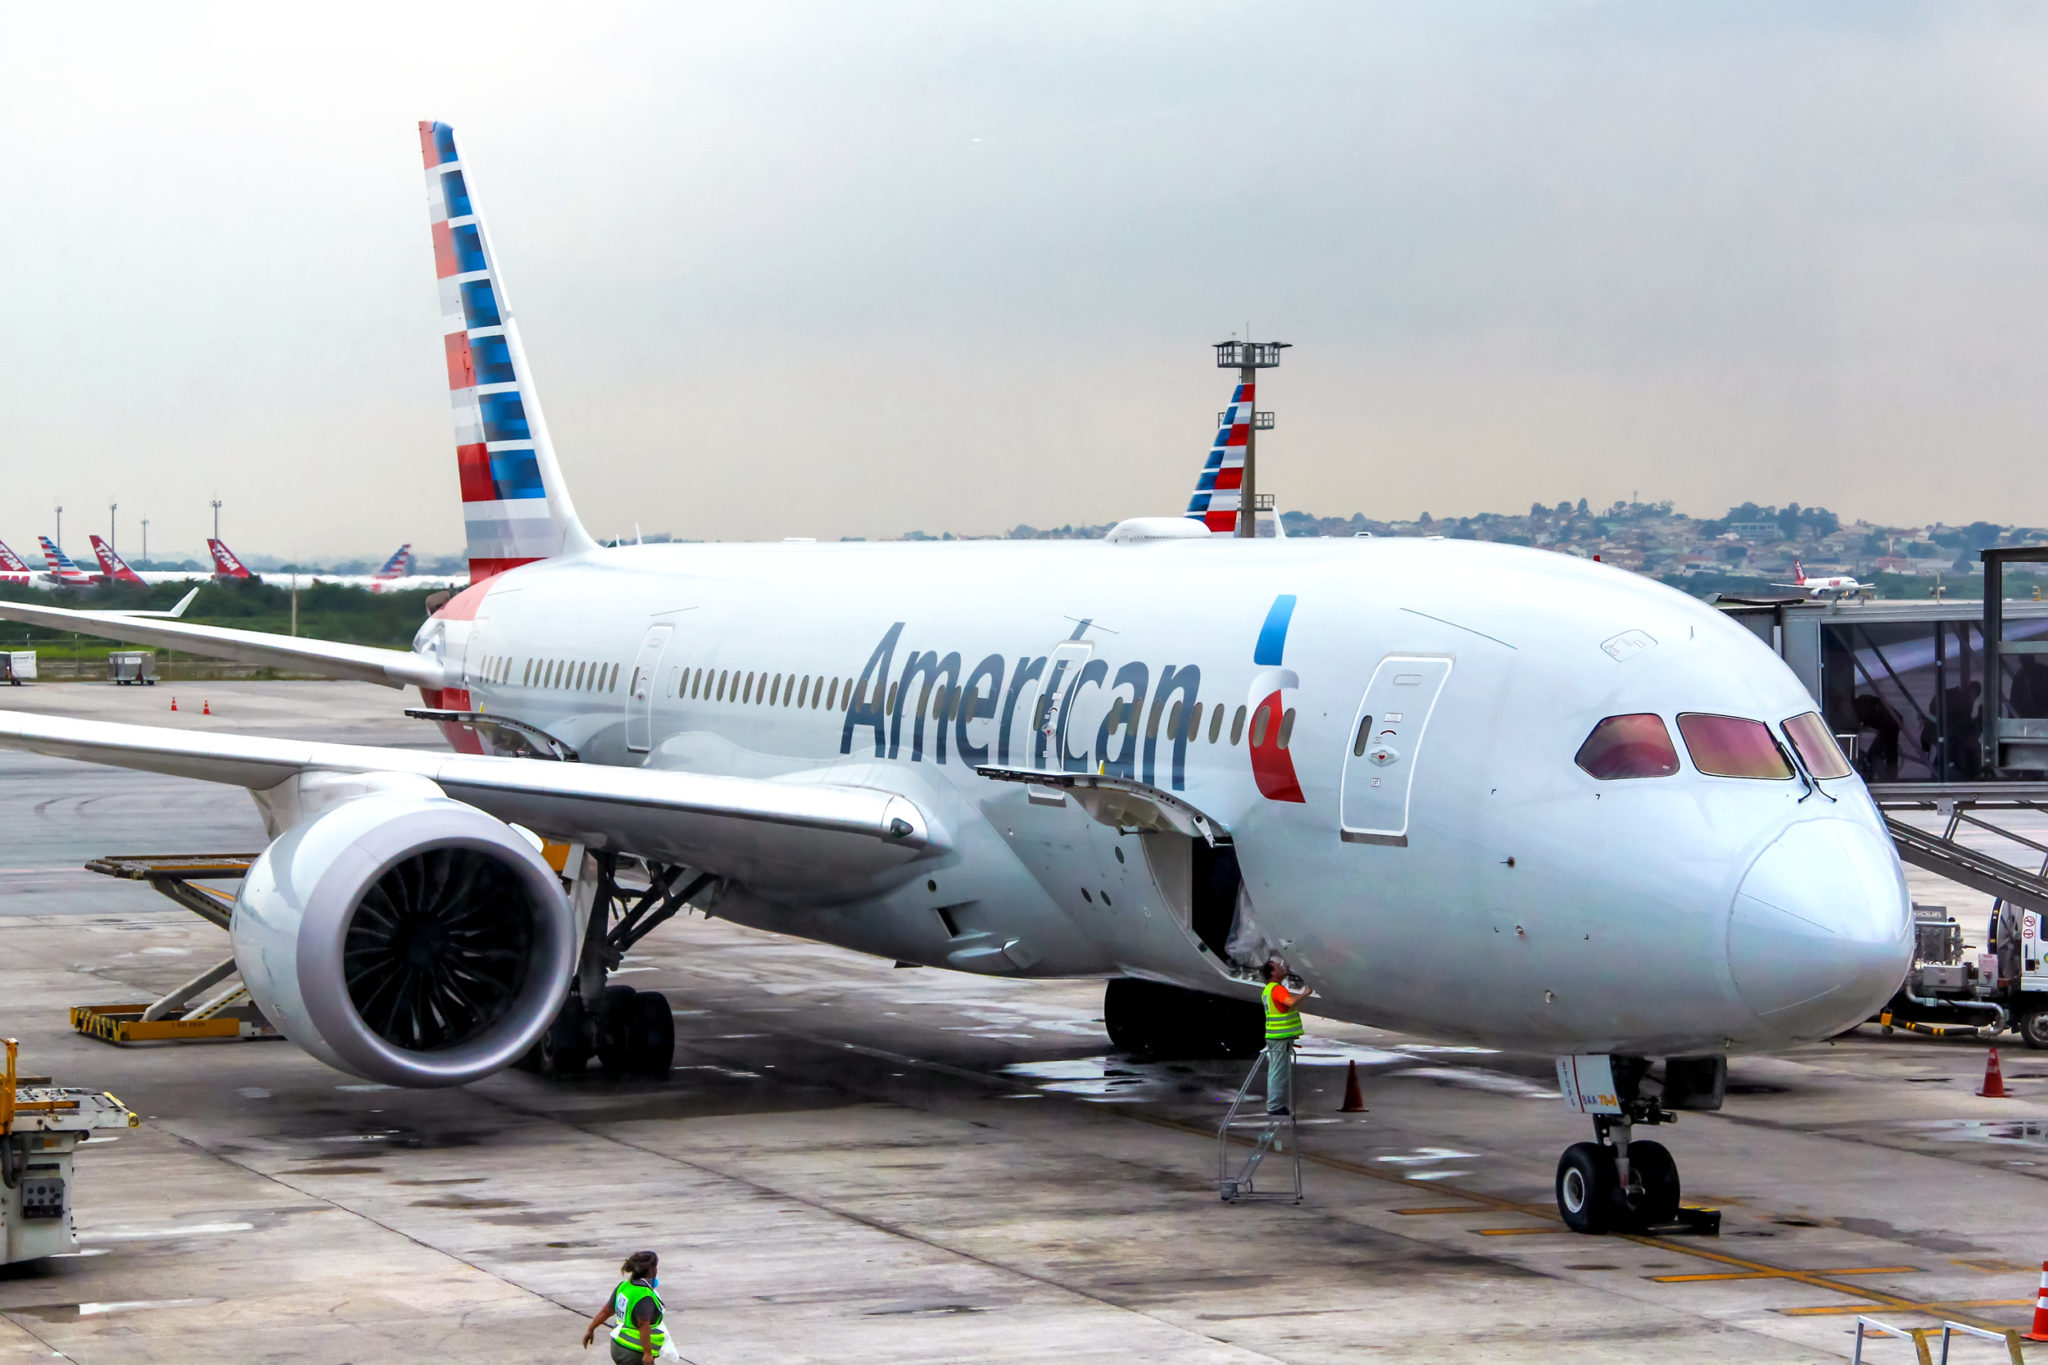 Gol e American Airlines anunciam acordo de compartilhamento de